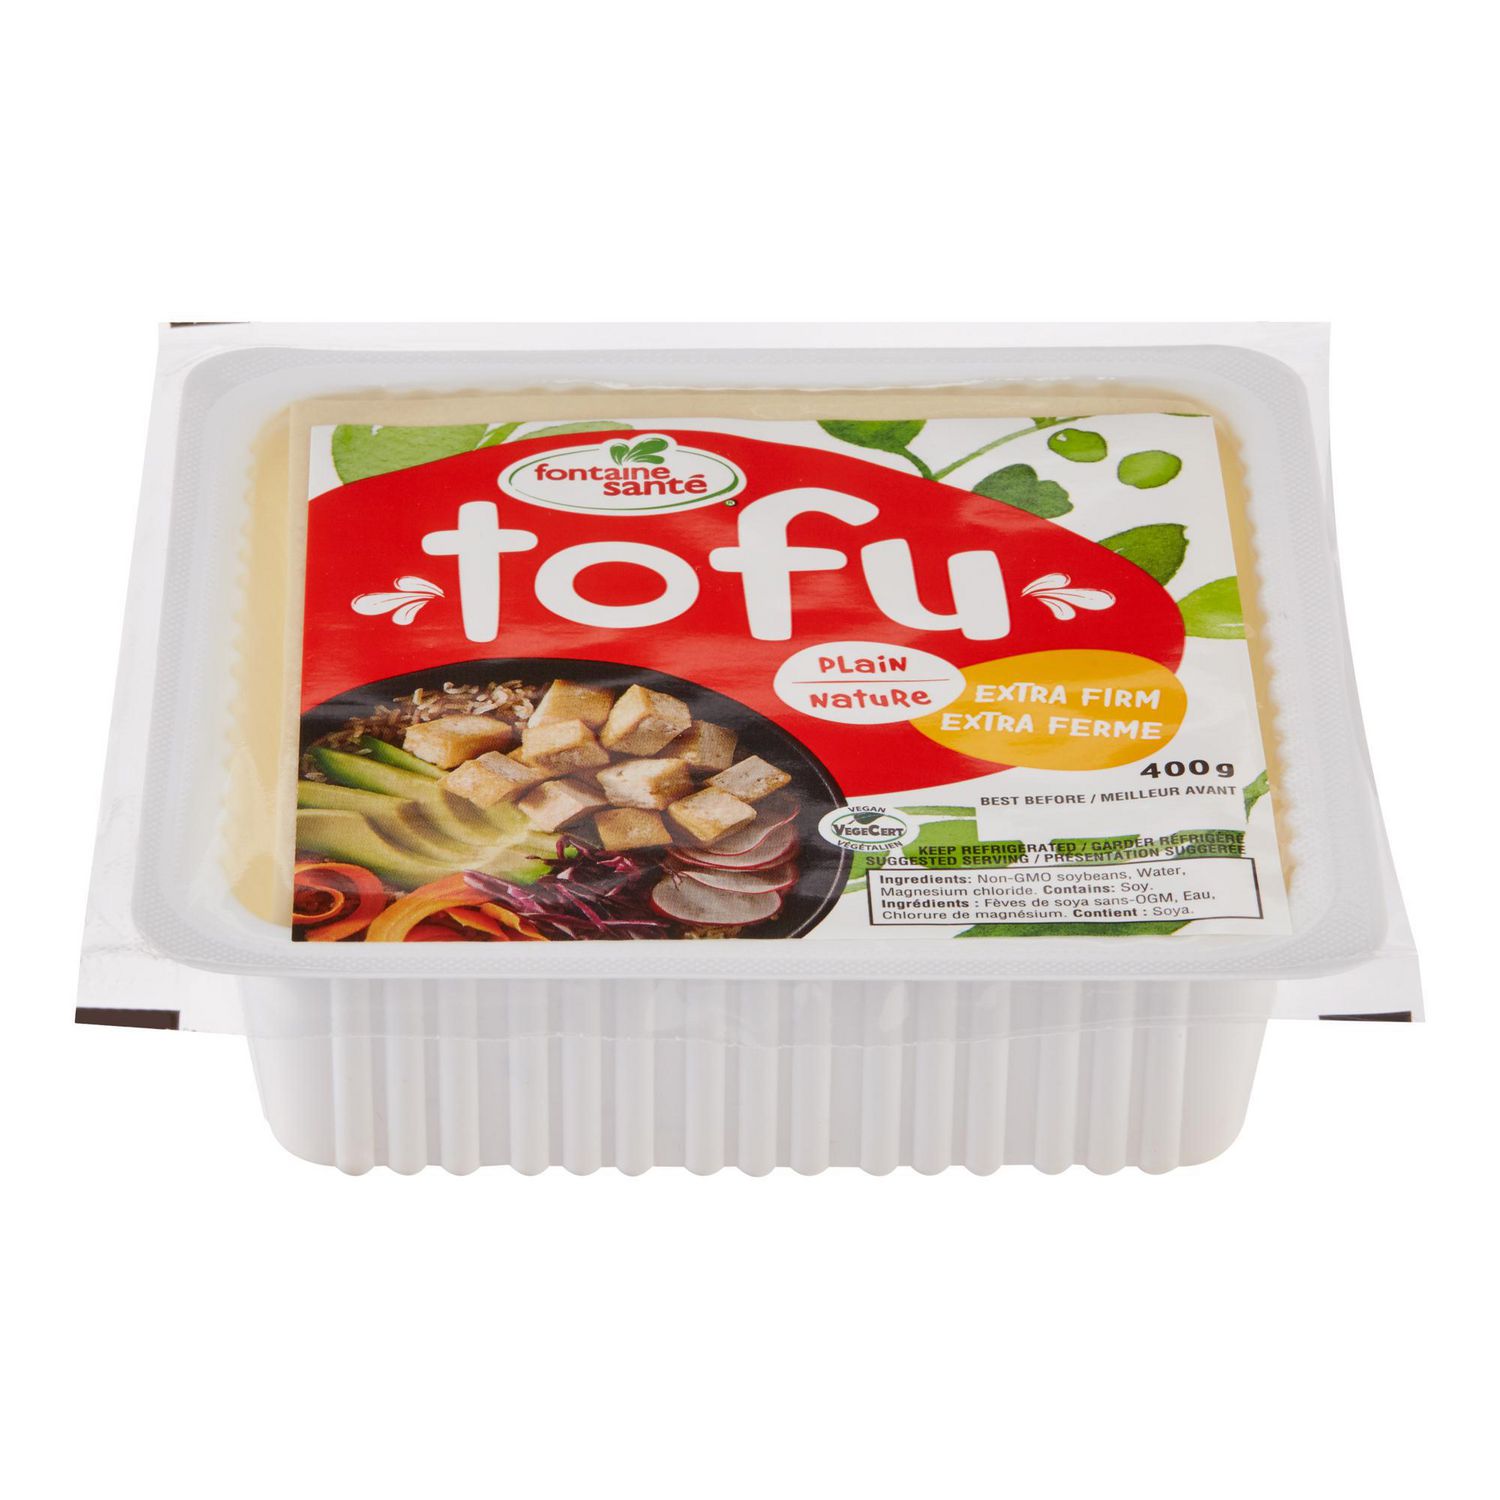 Fontaine Sante Extra Firm Plain Tofu Walmart Canada